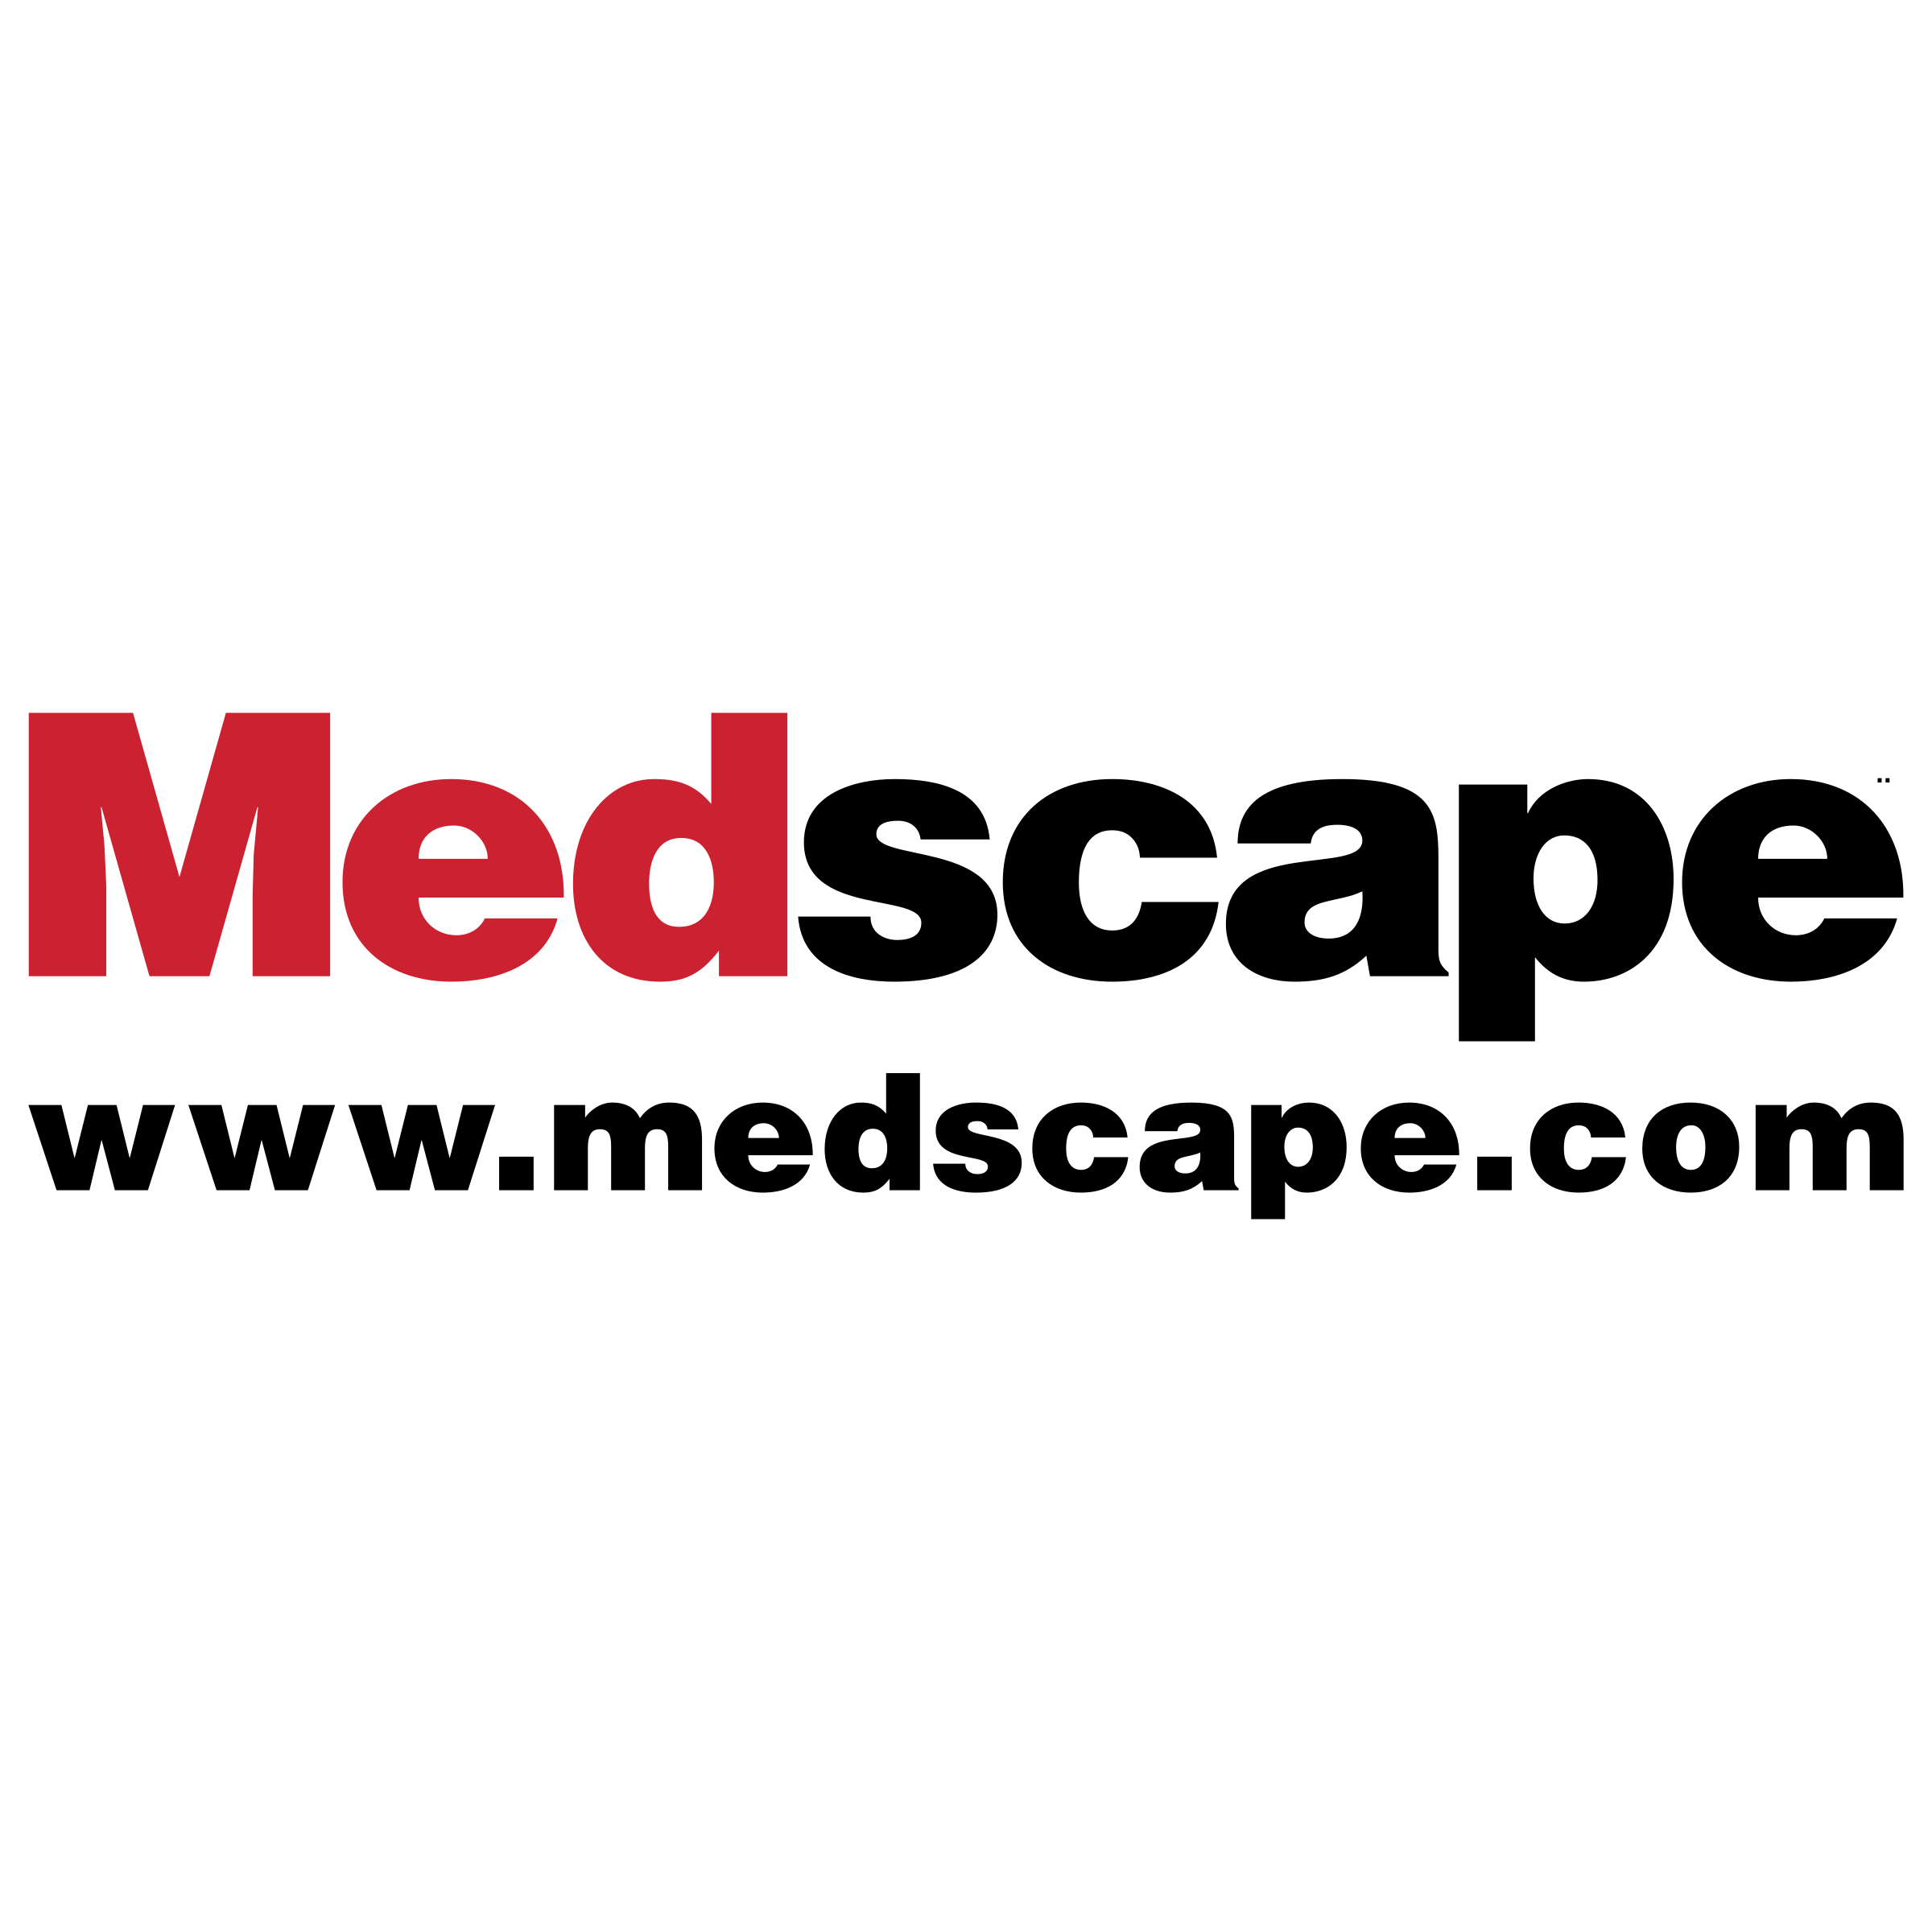 Medscape Logo - Medscape Logo PNG Transparent & SVG Vector